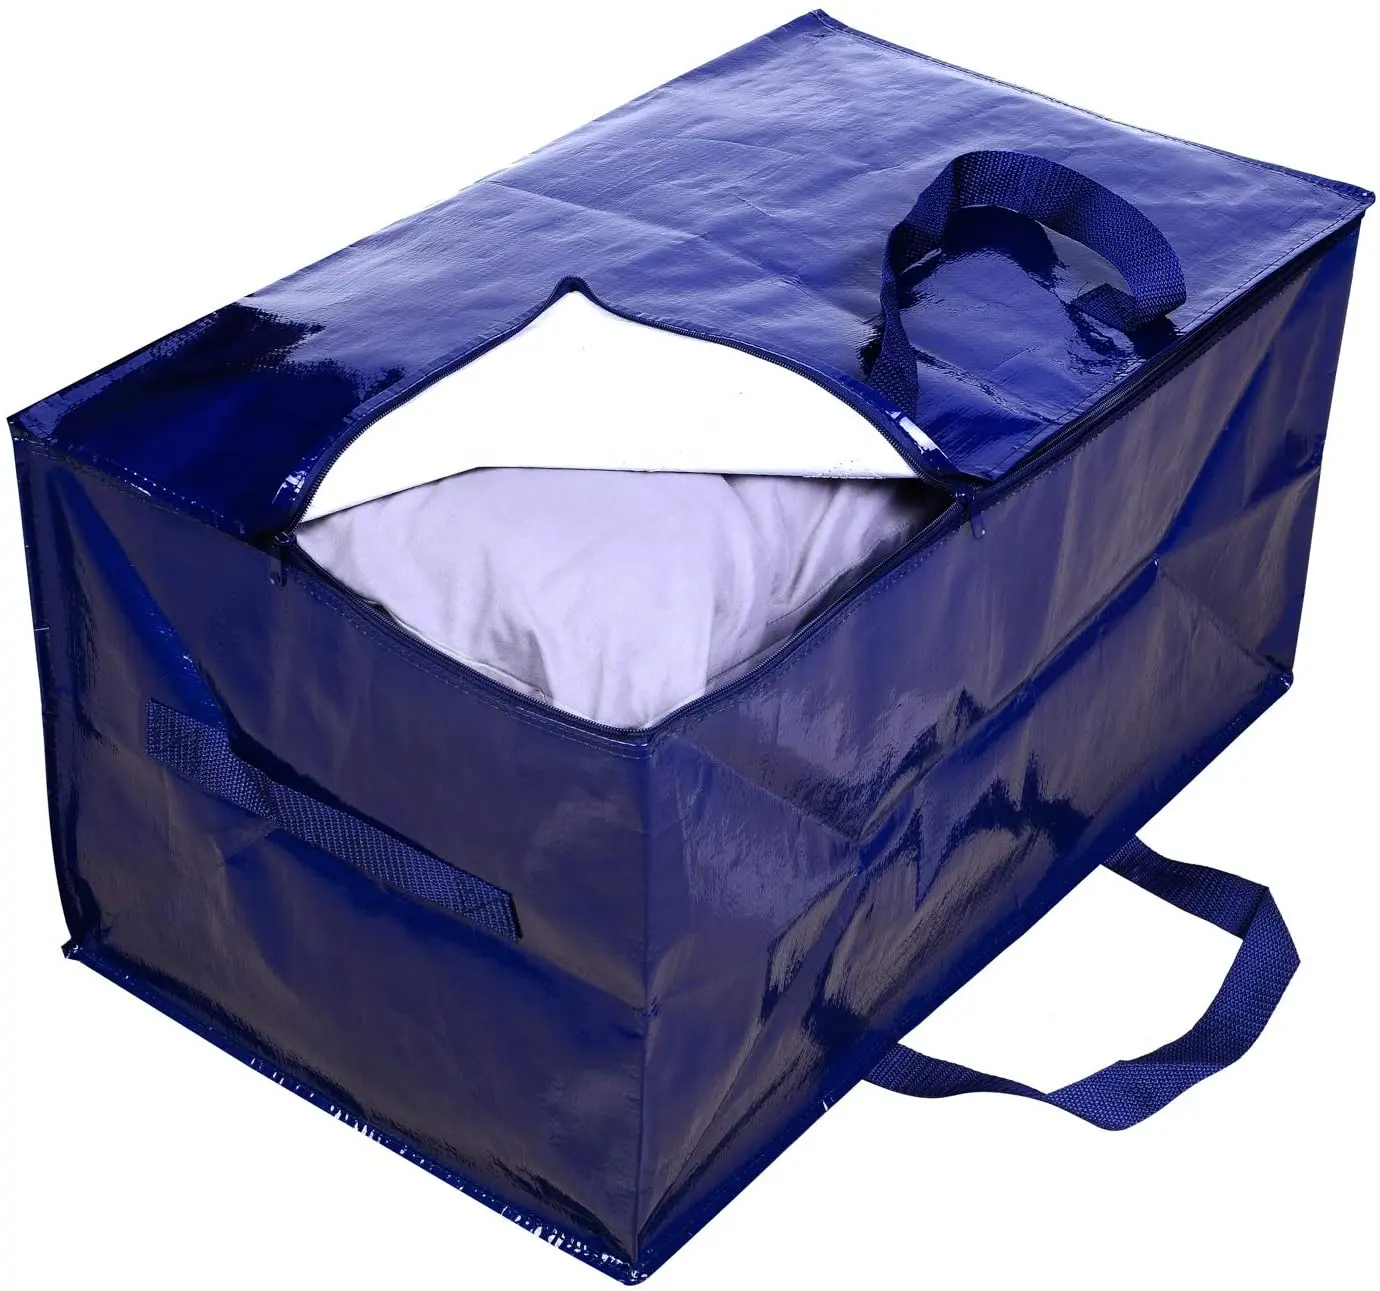 गर्म बिक्री टिकाऊ भंडारण जिपर बैग कपड़े क्रिसमस भंडारण बैग के लिए आगे बढ़ के साथ डबल सिर जिपर